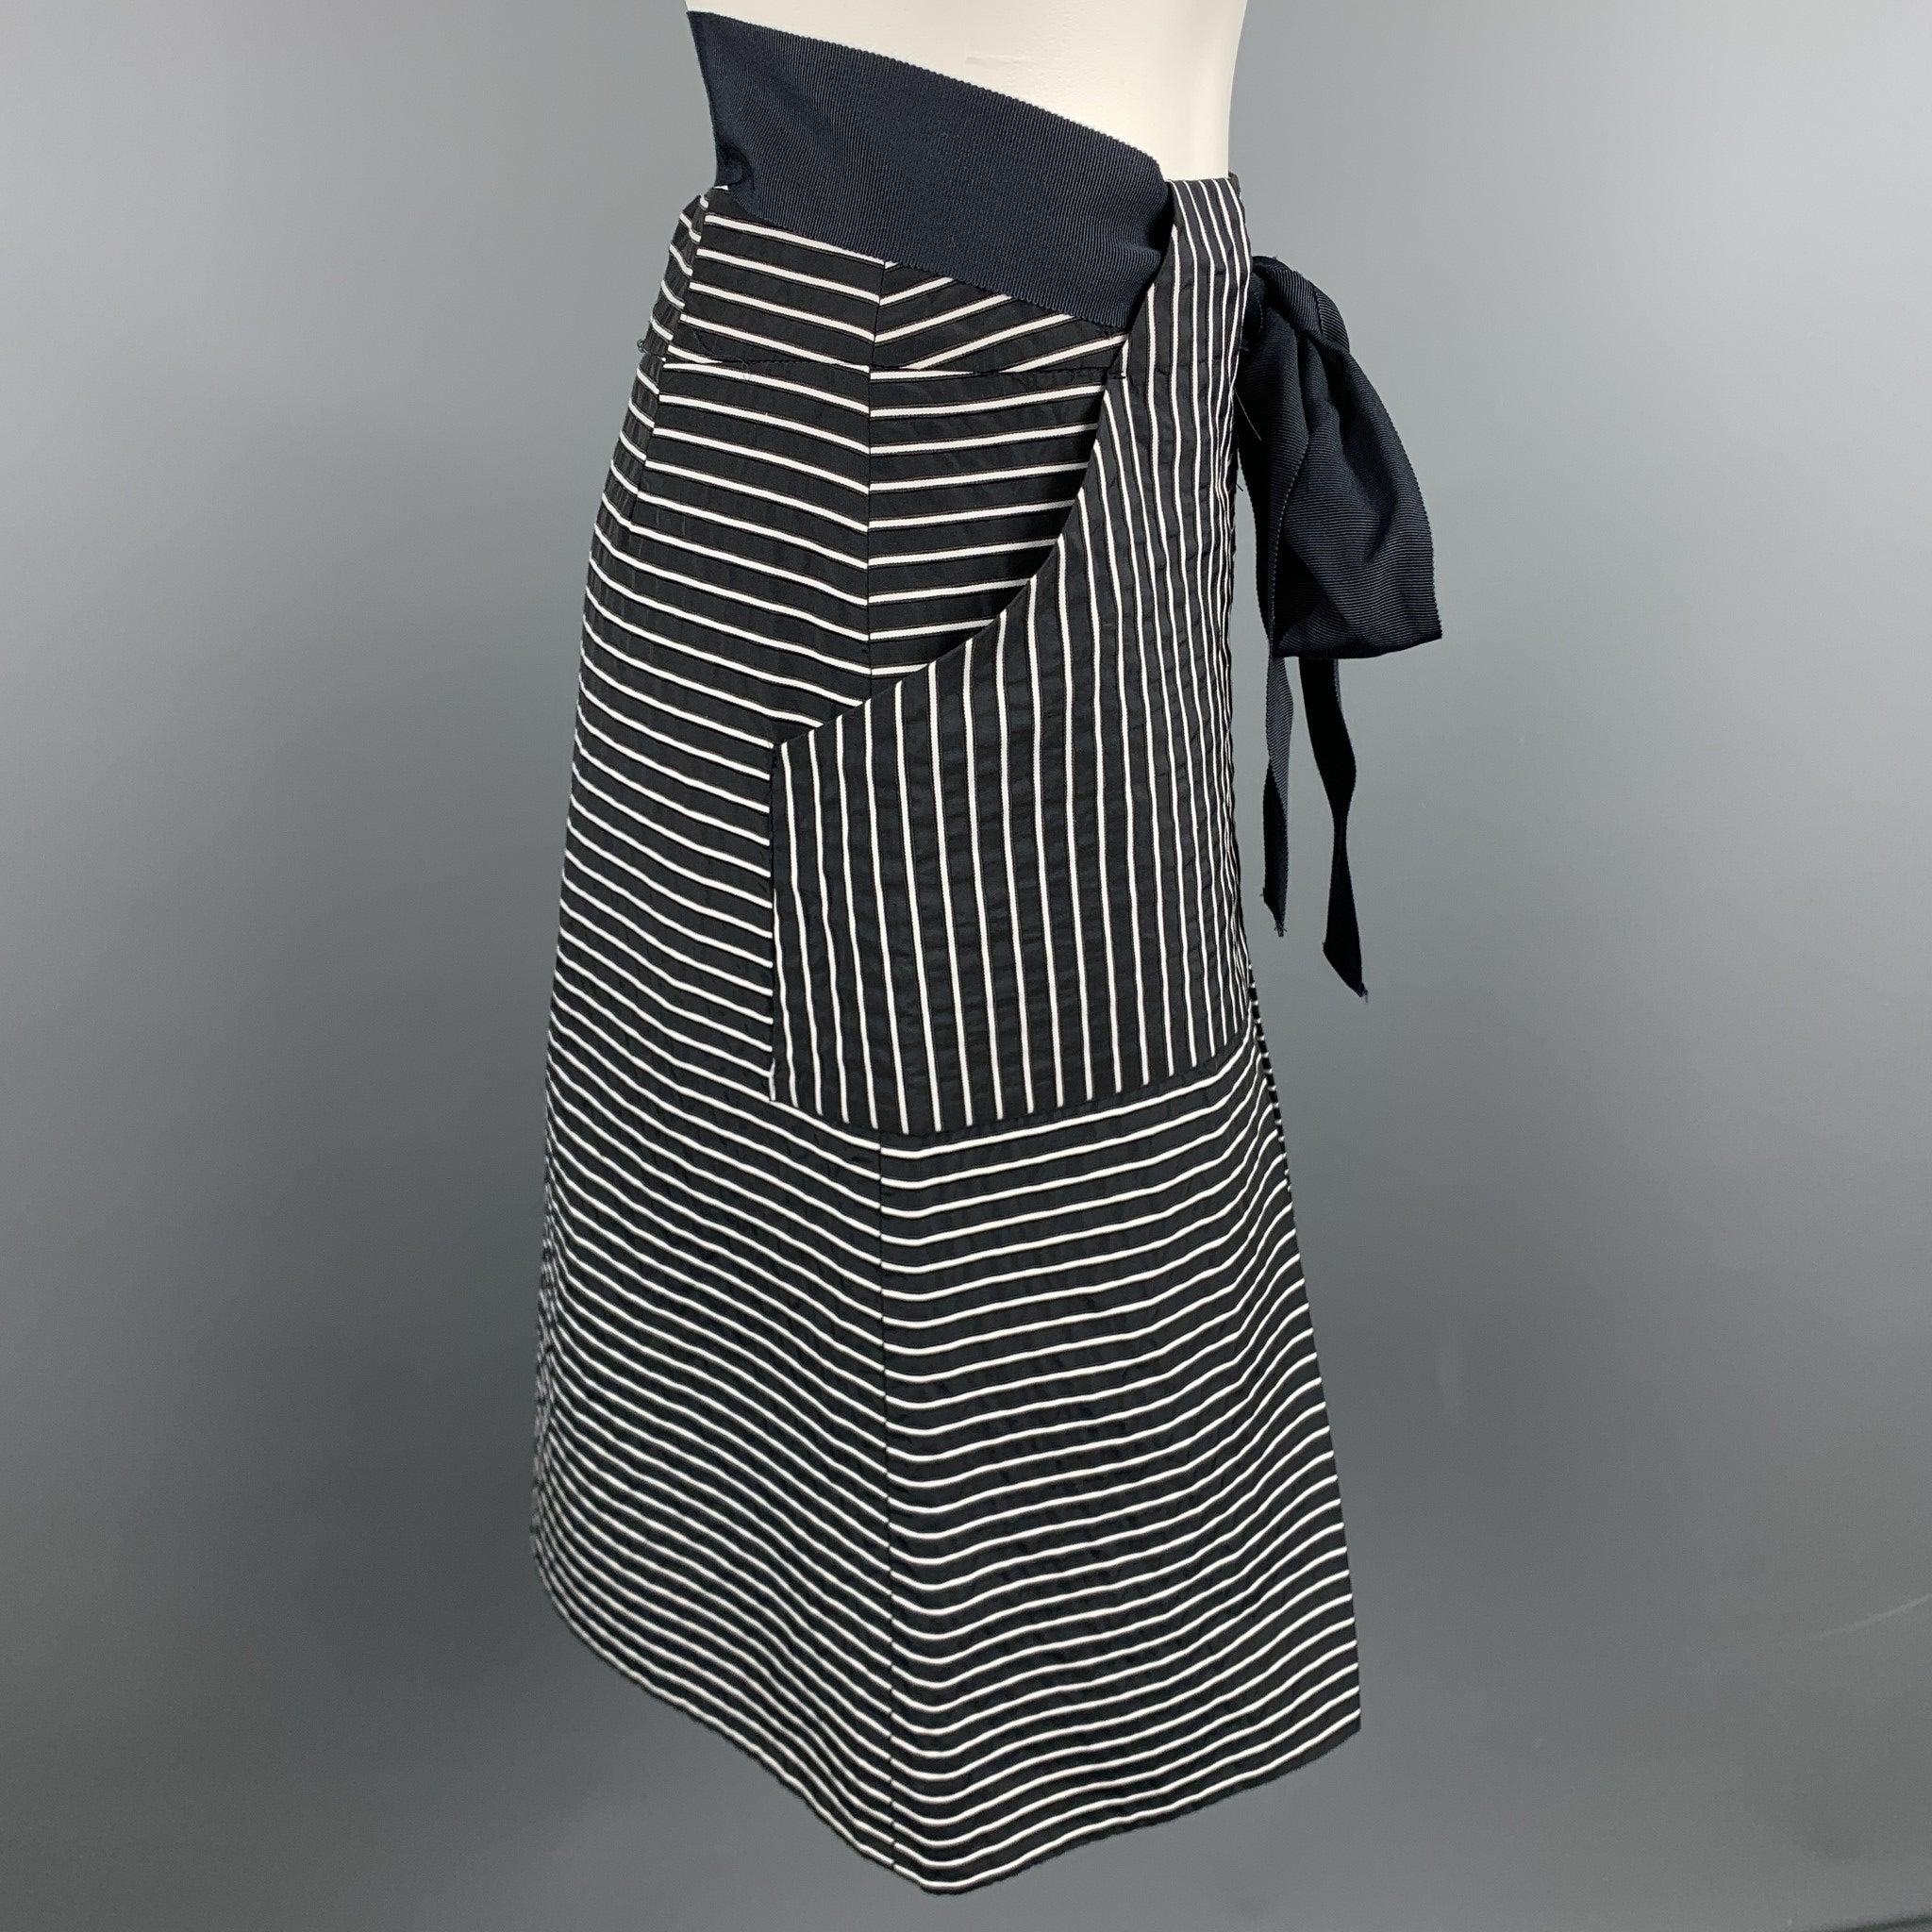 CAROLINA HERRERA Rock aus schwarz-weiß gestreifter Baumwolle/Polyester mit A-Linie, Gürtel mit Schleife und Reißverschluss auf der Rückseite.
Ausgezeichnet
Gebrauchtes Zustand. 

Markiert:   2 

Abmessungen: 
  Taille: 26 Zoll 
Hüfte: 36 Zoll